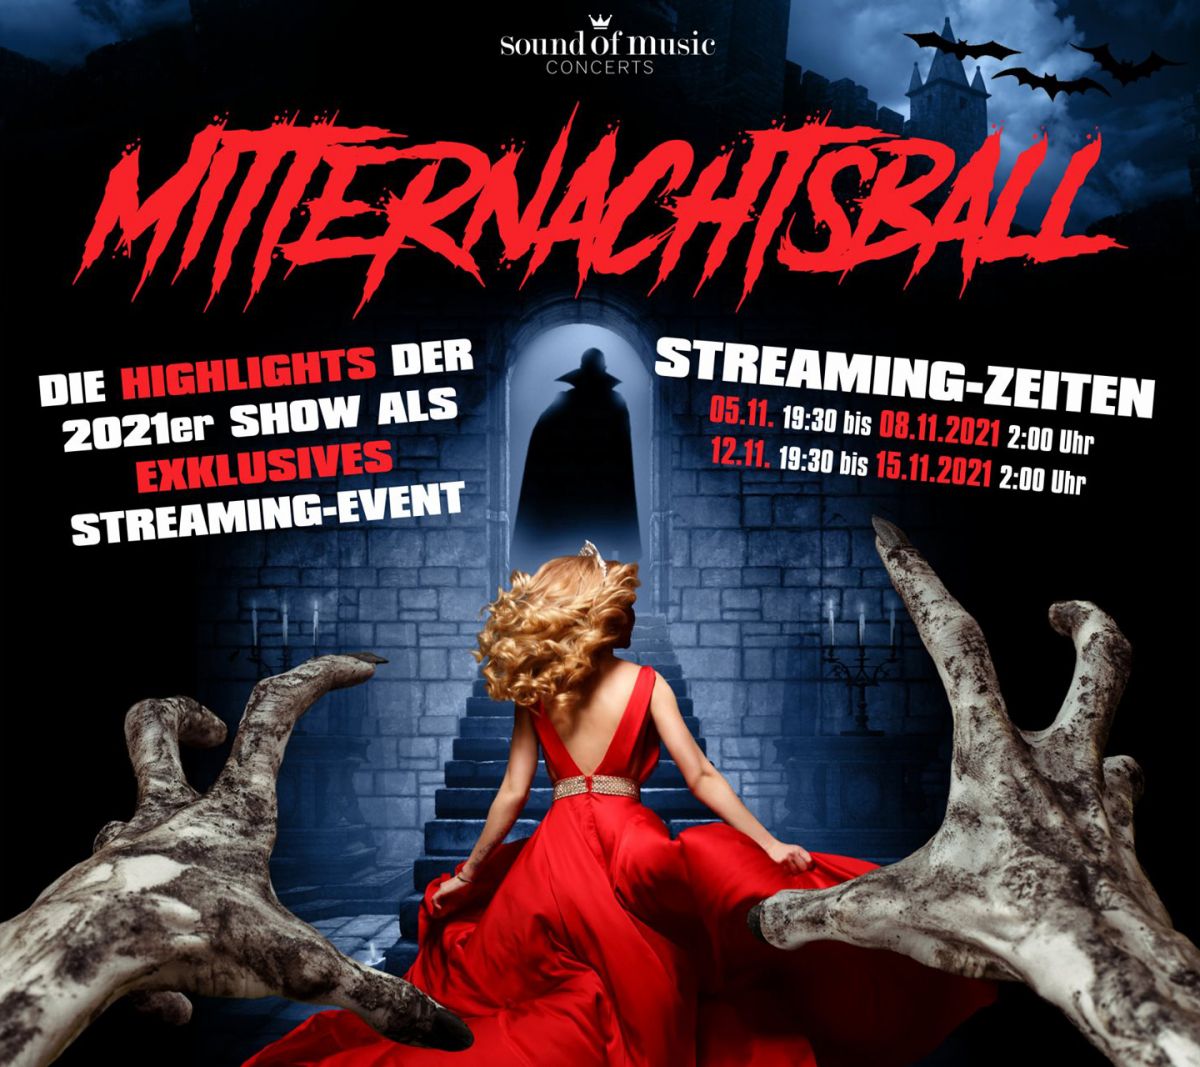 84539653a443b2fbca6229d447cdcd0d_XL Mitternachtsball 2021 im Streaming-Konzert nacherleben - musicalradio.de | Musicals kostenlos im Radio